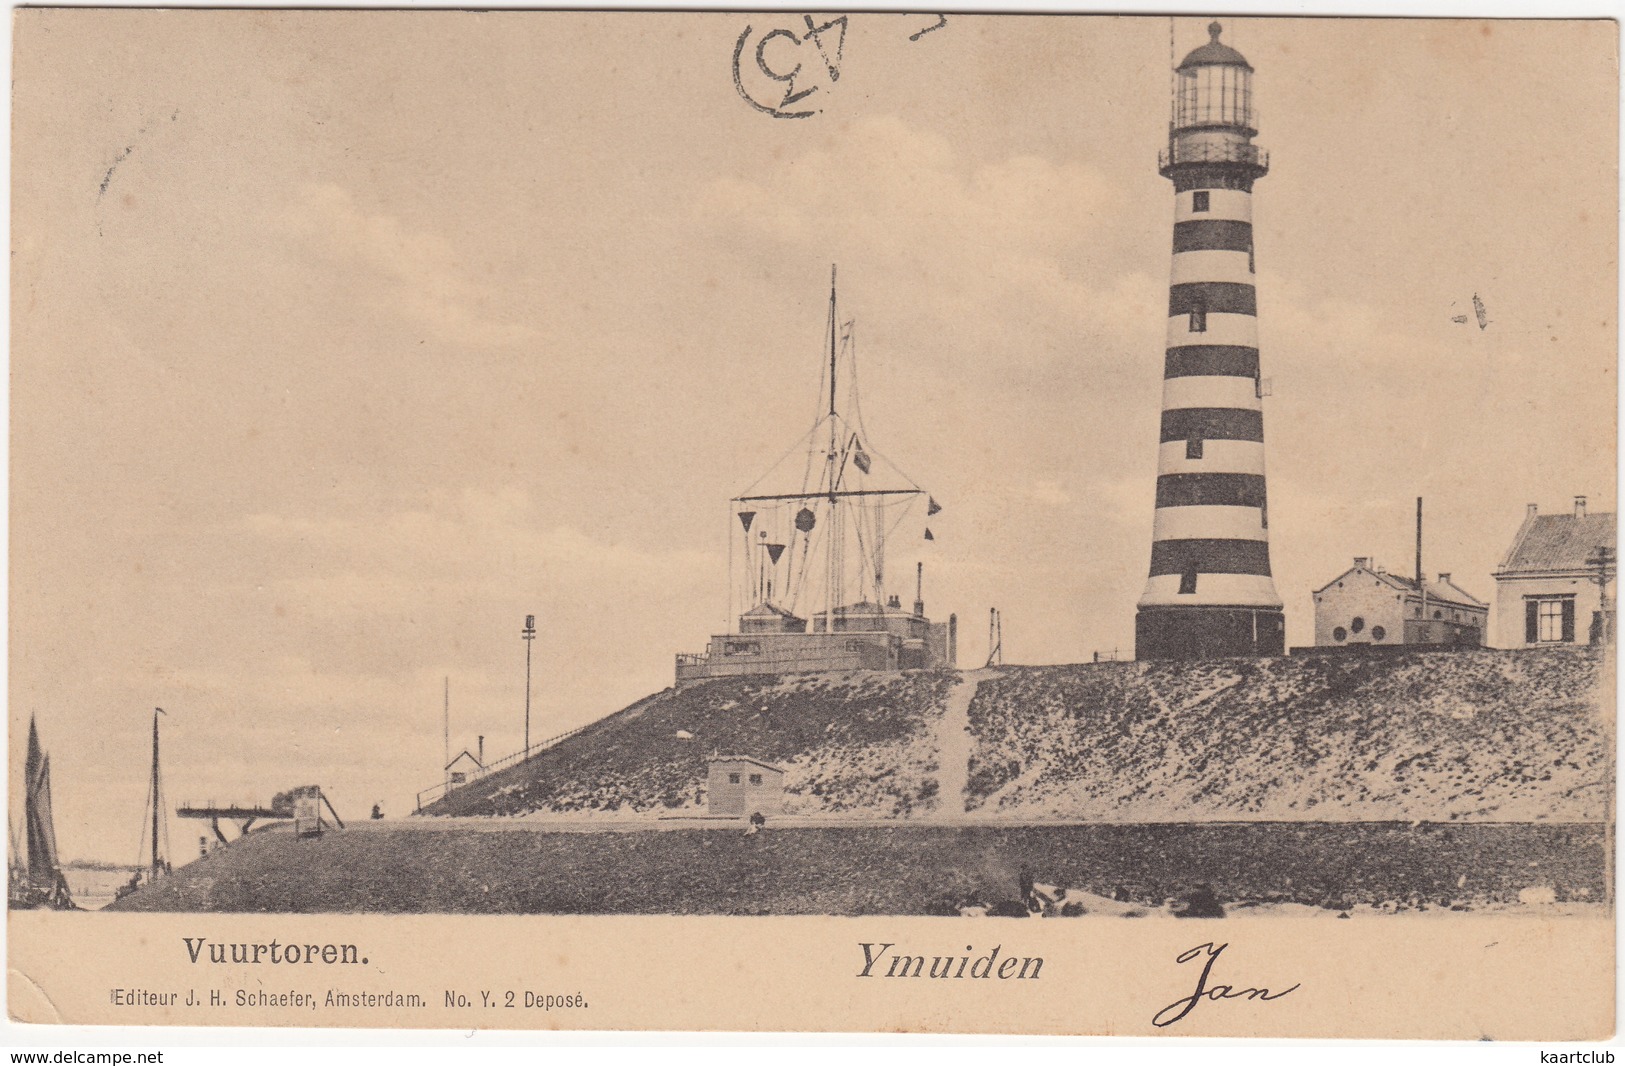 Ymuiden  -  Vuurtoren - 1901 - (Noord-Holland, Nederland/Holland) - Ed. J.H. Schaefer - No. Y.2. - IJmuiden